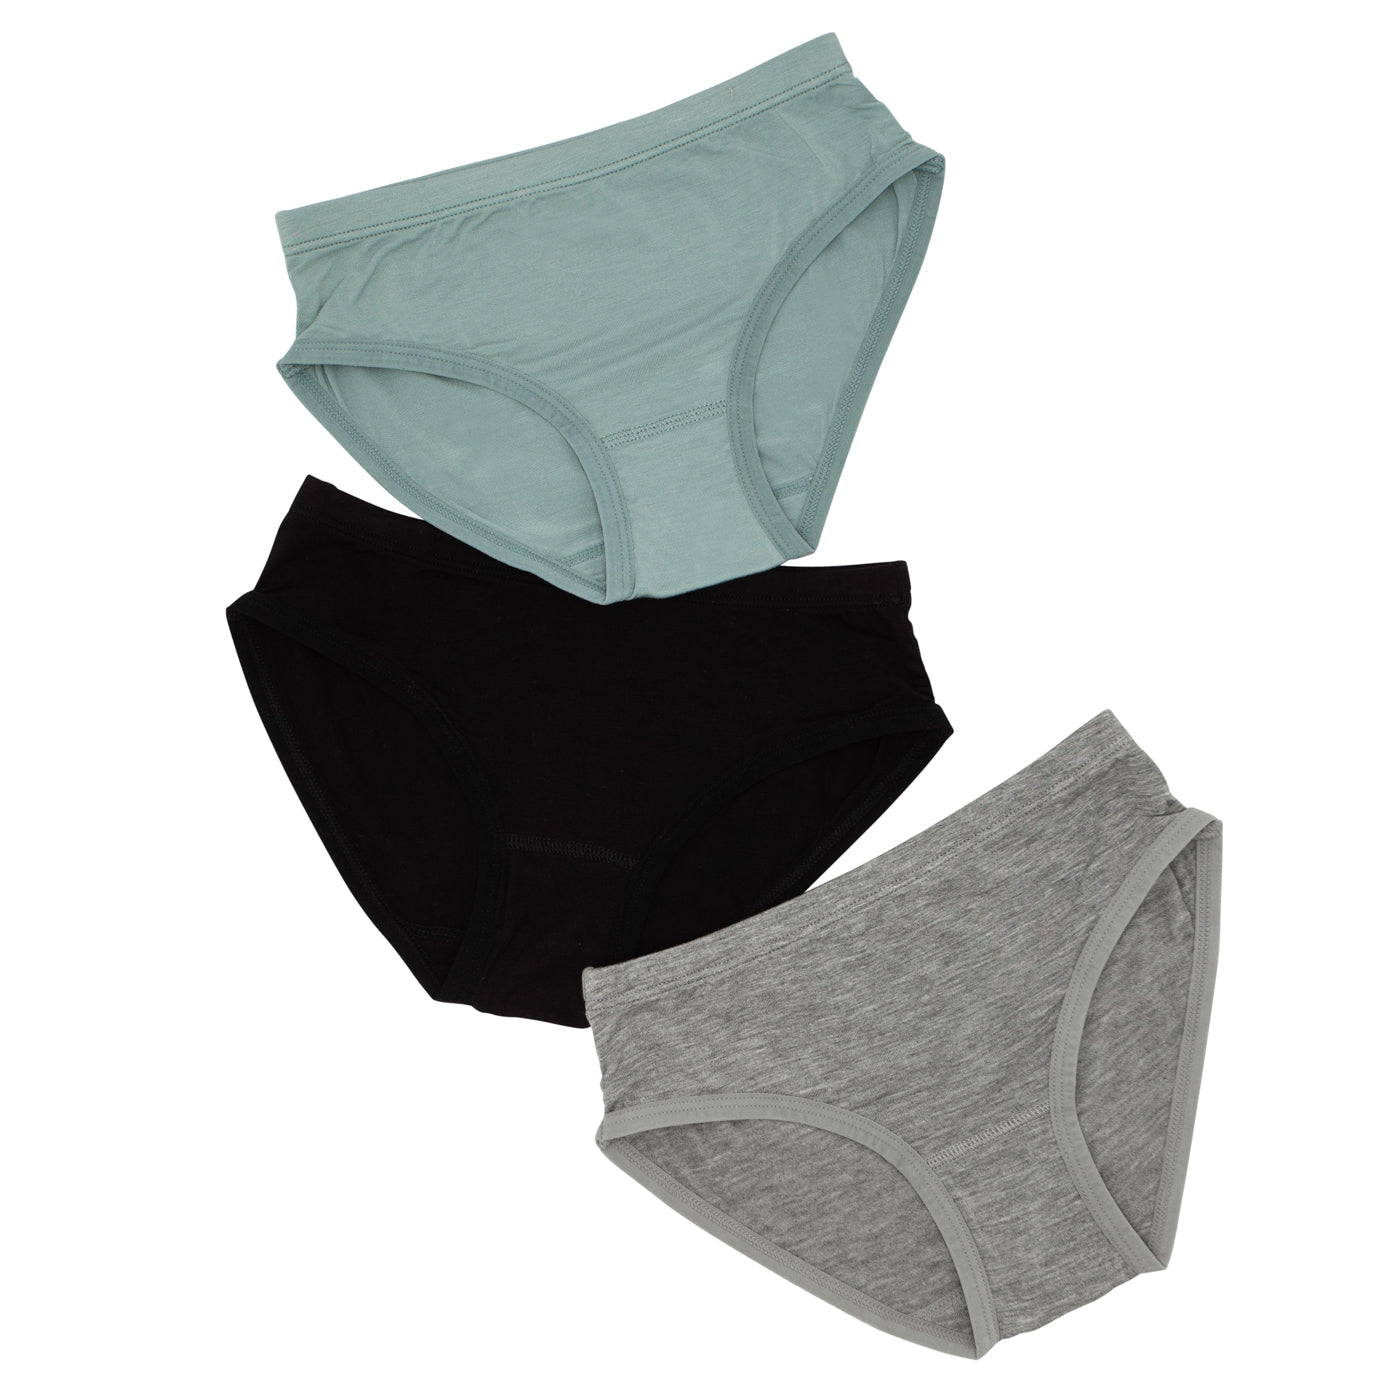 Stormy, Black, Heather Gray Girl's Brief Underwear - 3 Pack